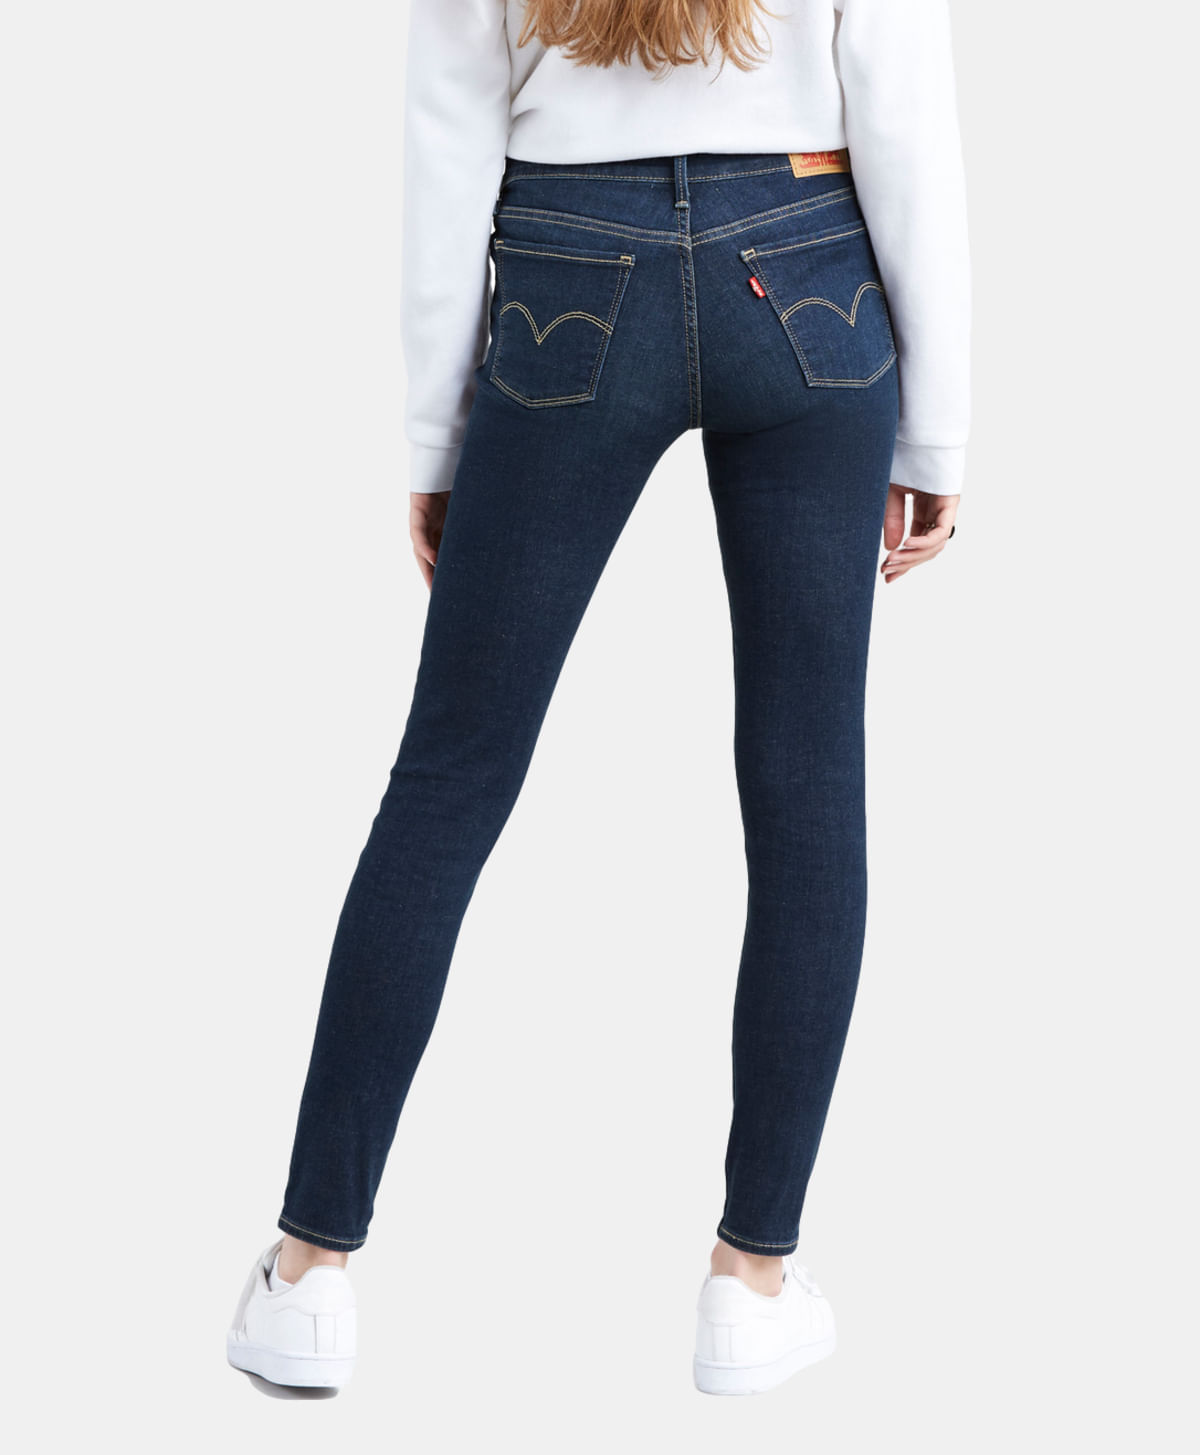 Renunciar Peregrinación va a decidir Levi's® 710 Súper Skinny Jeans 17778-0324|Levi's